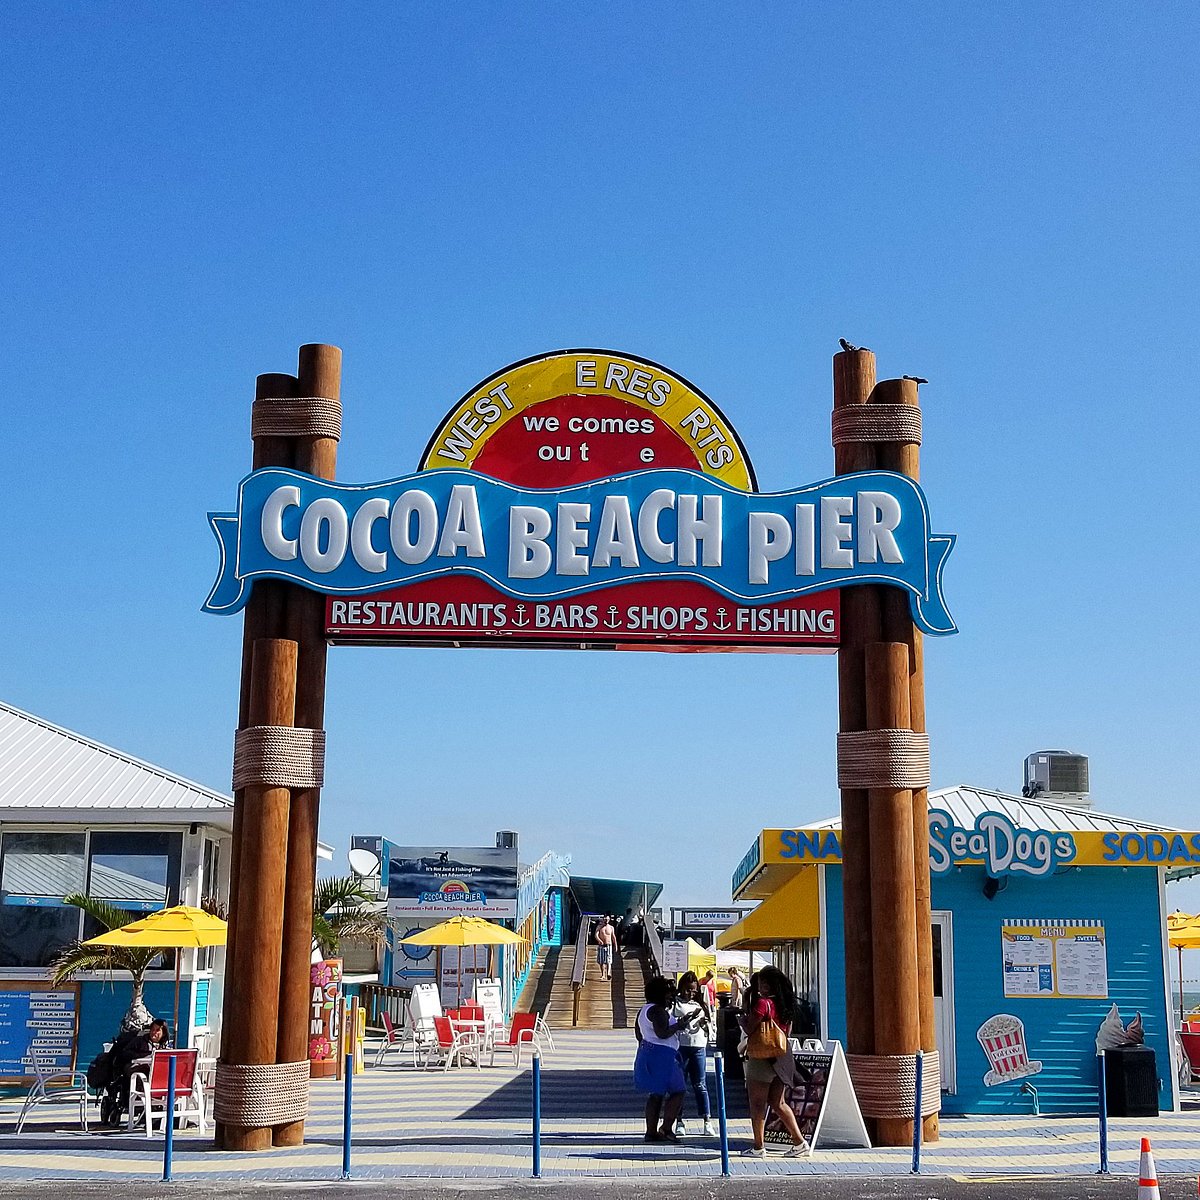 COCOA BEACH PIER 2022 Qué saber antes de ir Lo más comentado por la